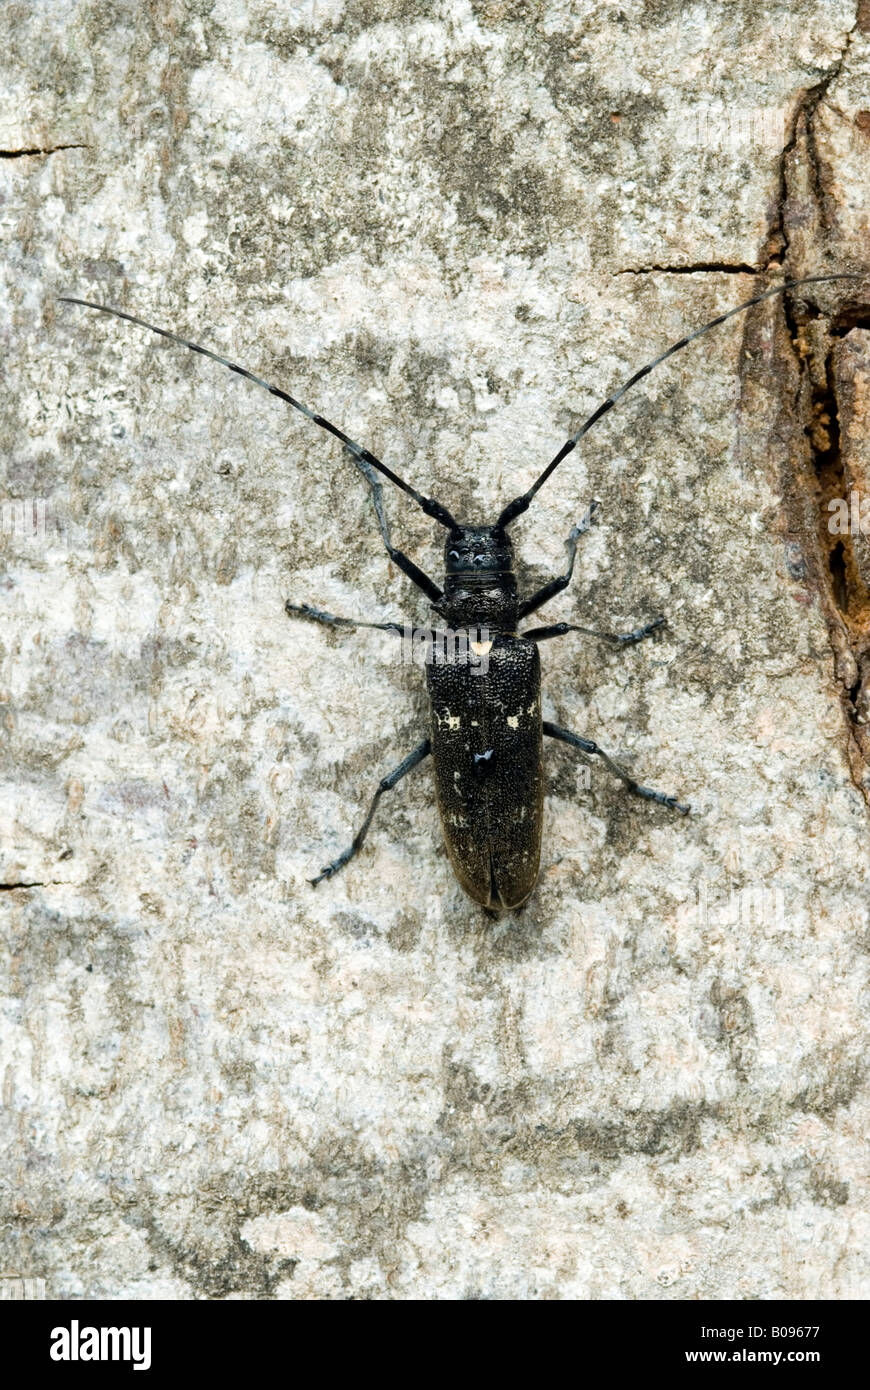 Capricorn Beetle (Cerambyx scopolii), Schwaz, Tyrol, Austria, Europe Stock Photo